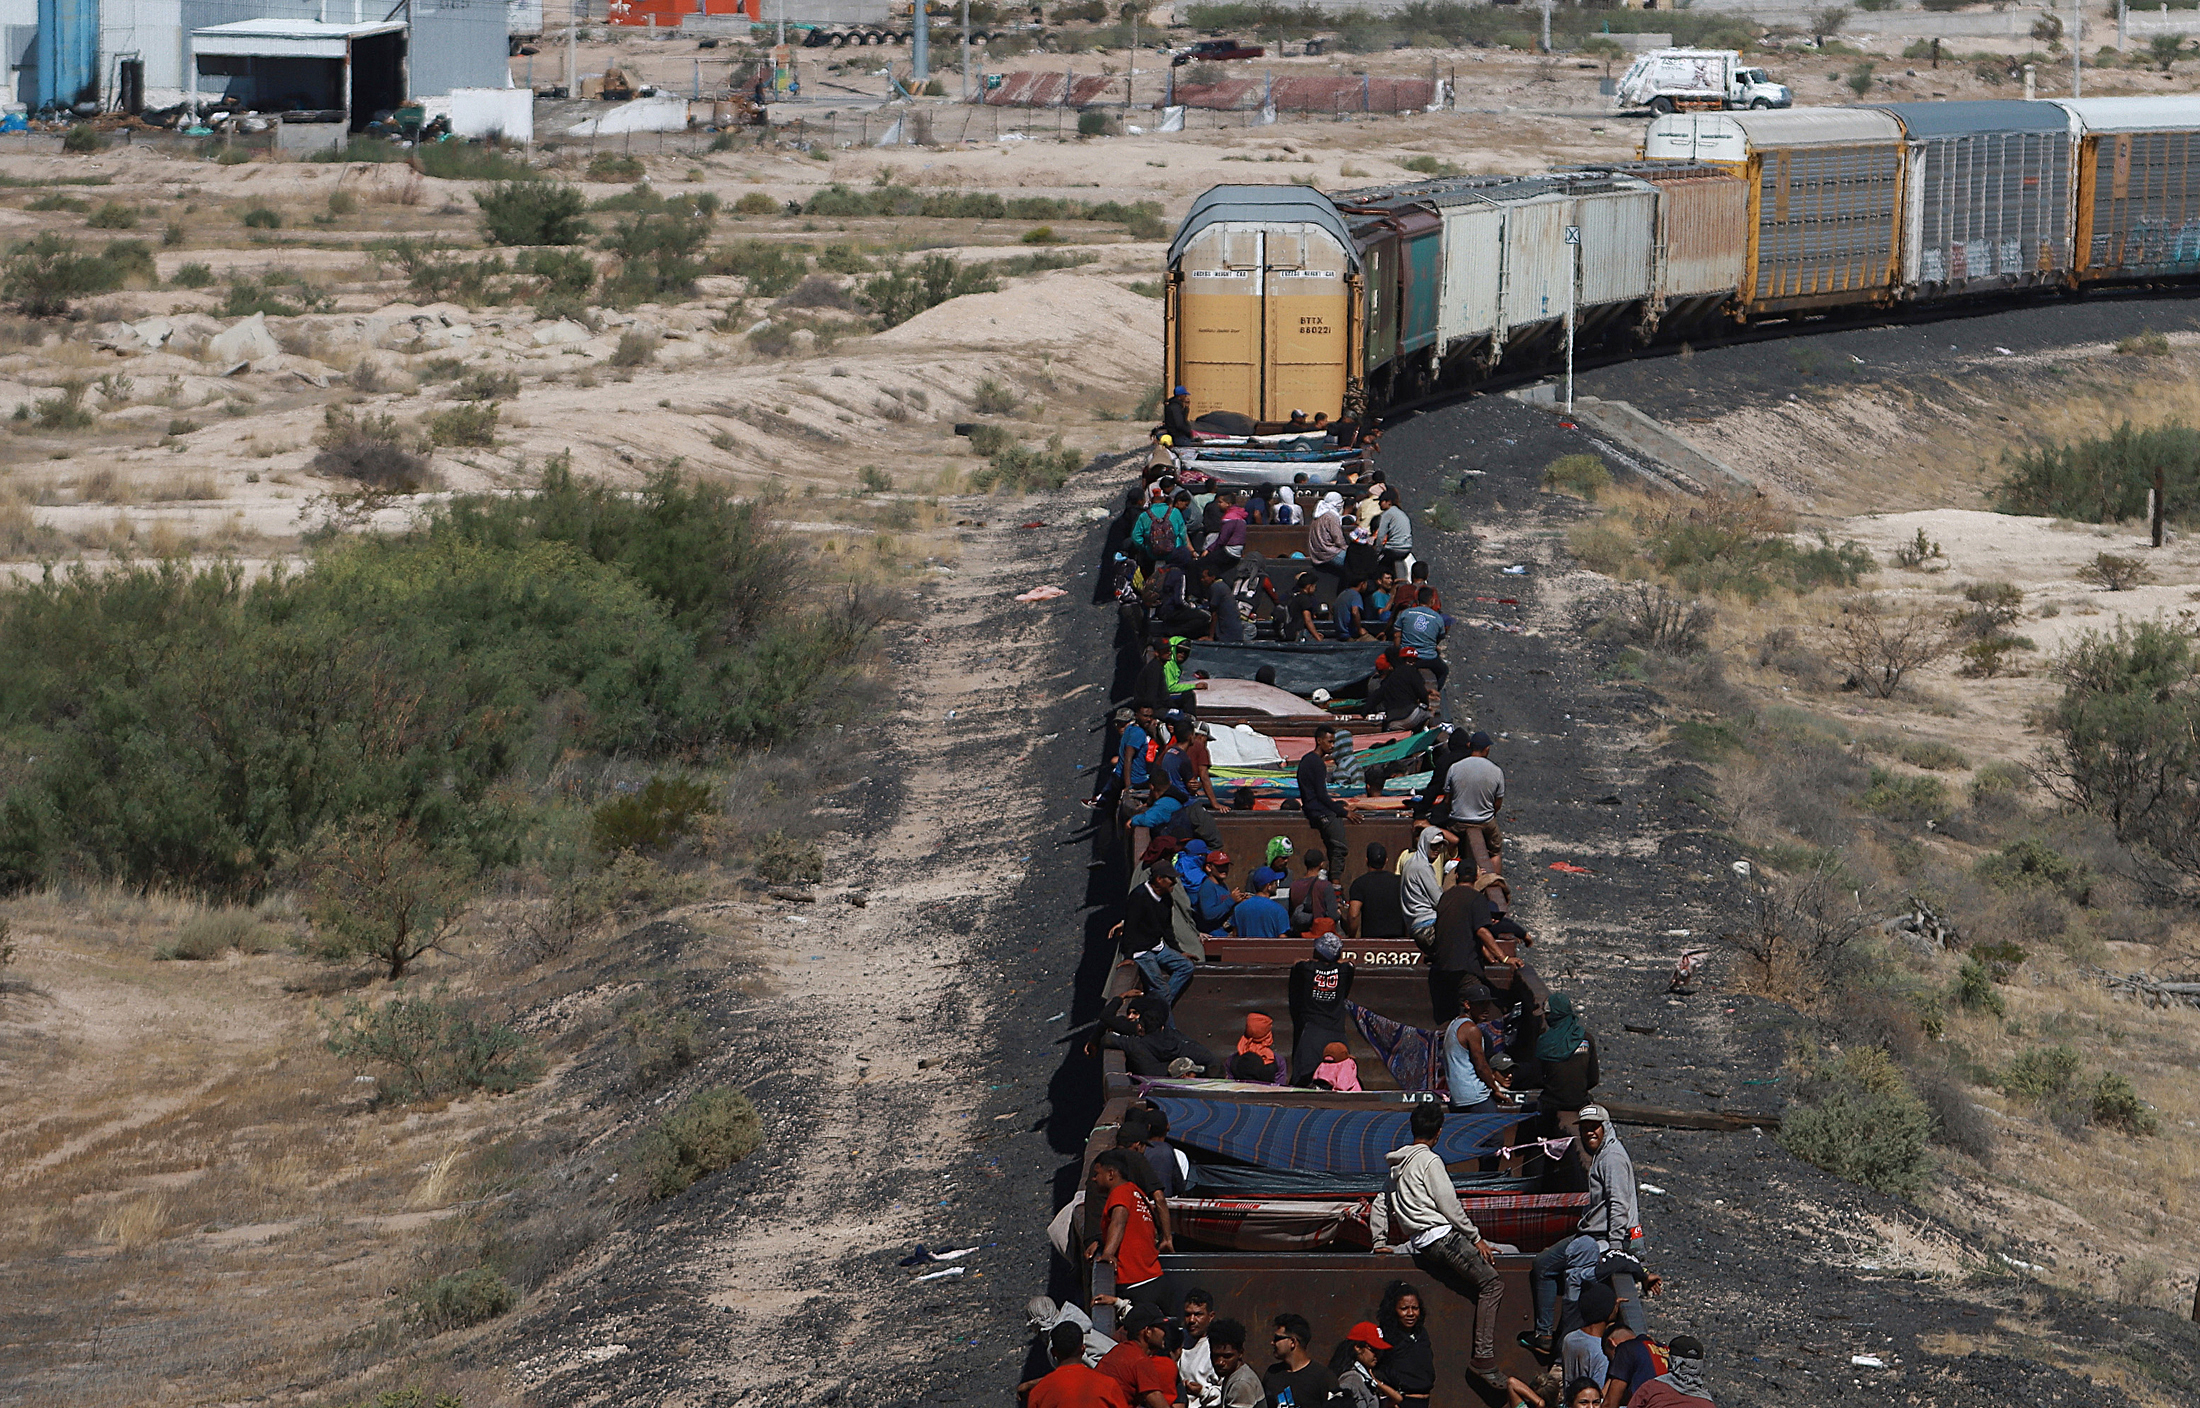 “Vi caer a niños y adultos del tren”: La pesadilla de migrante venezolano en su travesía hacia EEUU